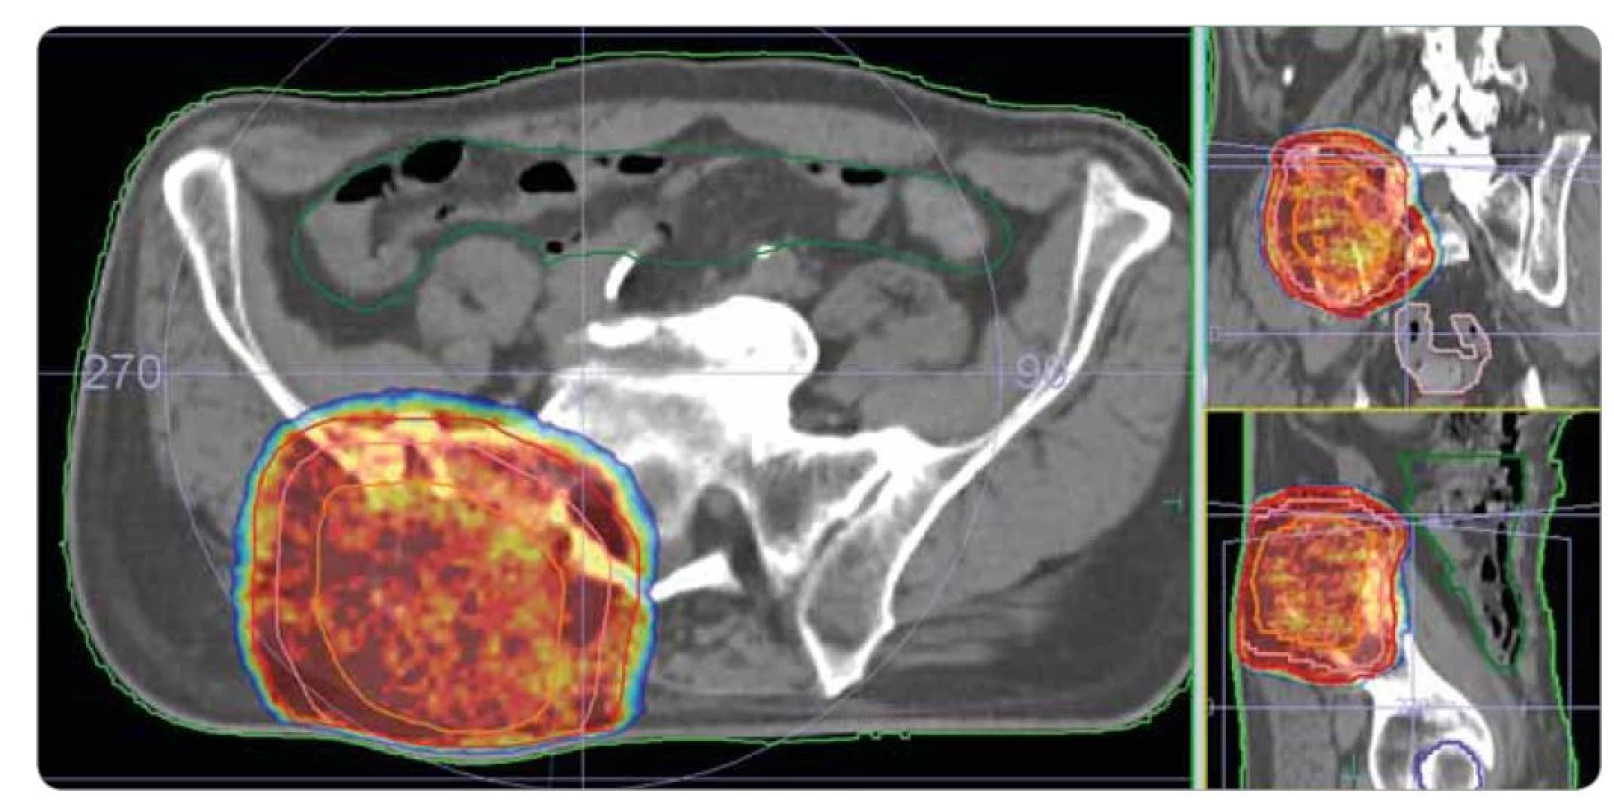 Ozařovací plán – paliativní radioterapie na oblast metastatického ložiska kosti kyčelní vpravo. Ozařovací technika radioterapie
s objemově modulovanou intenzitou (VMAT), přístroj Versa HD (Elekta). Předepsaná dávka: 30 Gy / 10 frakcí à 3 Gy. Kontury: oranžová –
nádorový objem (GTV), lososová – klinický cílový objem (CTV), červená – plánovací cílový objem (PTV), světle zelená – obrys těla, tmavě
zelená – střeva. Izodózy: červená – 100 % předepsané dávky, žlutozelená – 95 % předepsané dávky, modrá – 90 % předepsané dávky.